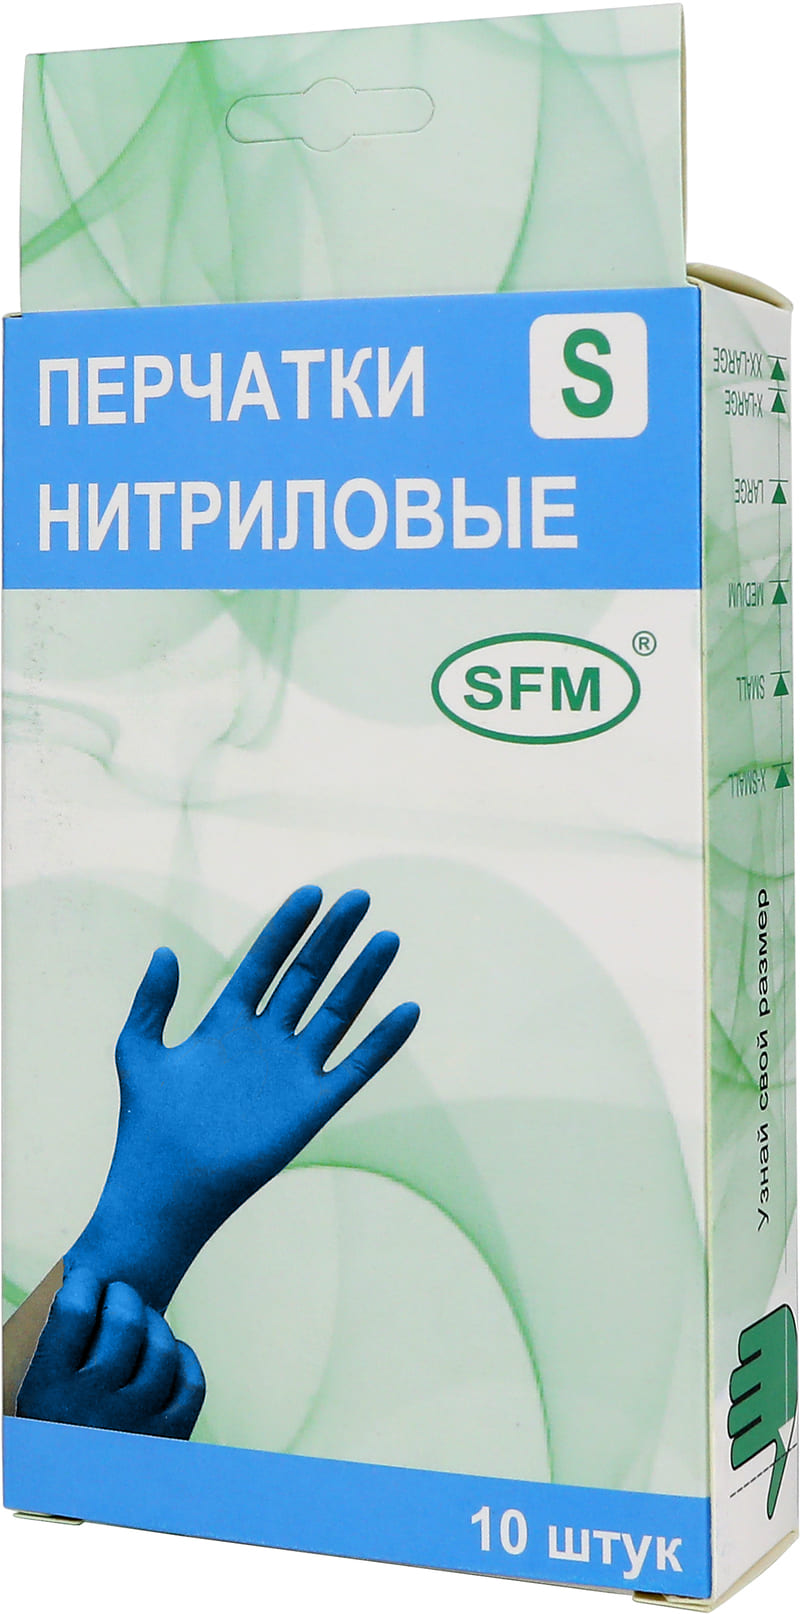 Перчатки нитриловые голубые 5 пар SFM, Германия